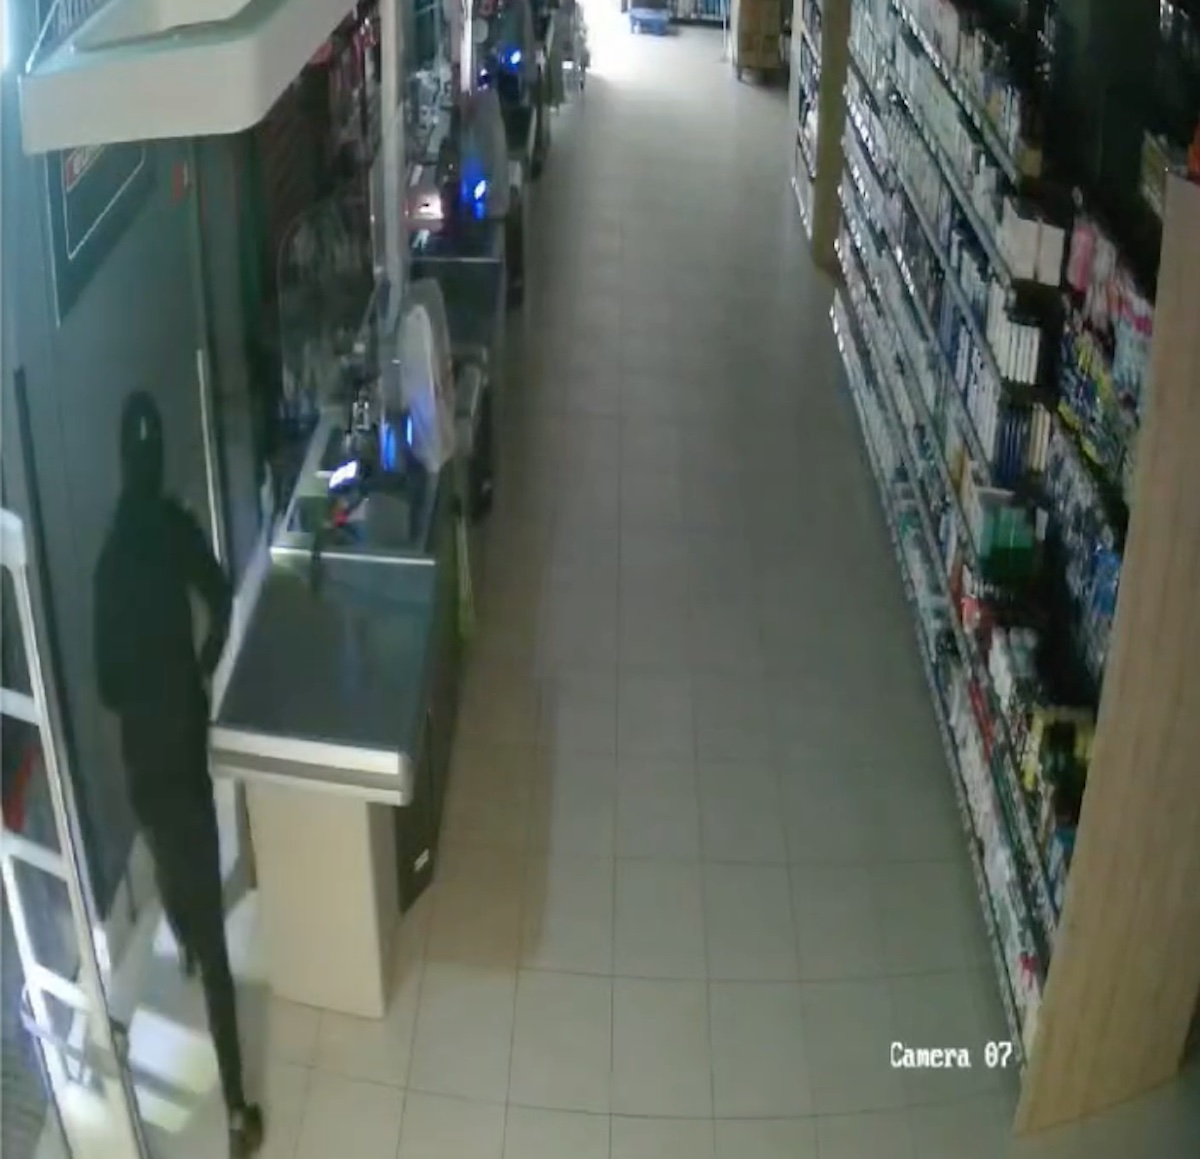 Sant’Anastasia: due rapine in una settimana, supermercato rischia chiusura